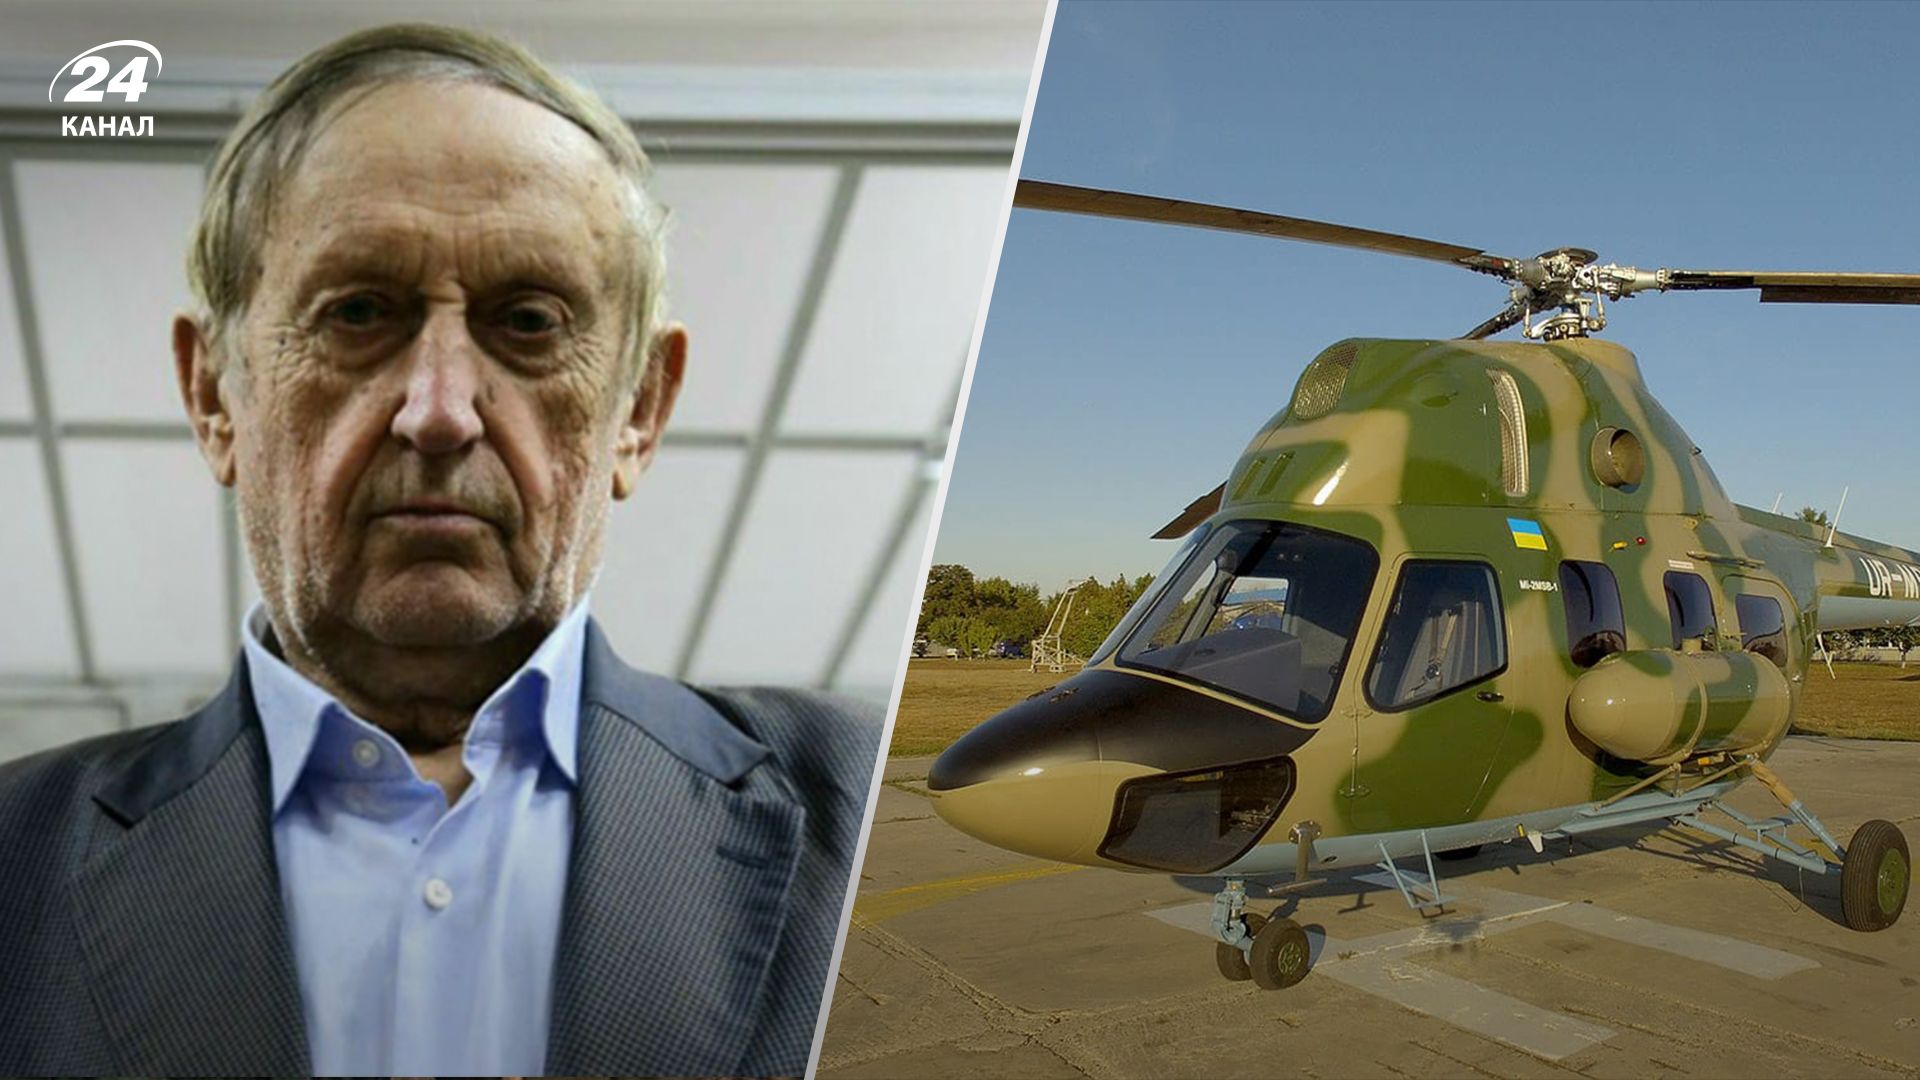 Богуслаєв блокував передачу гелікоптера для української армії